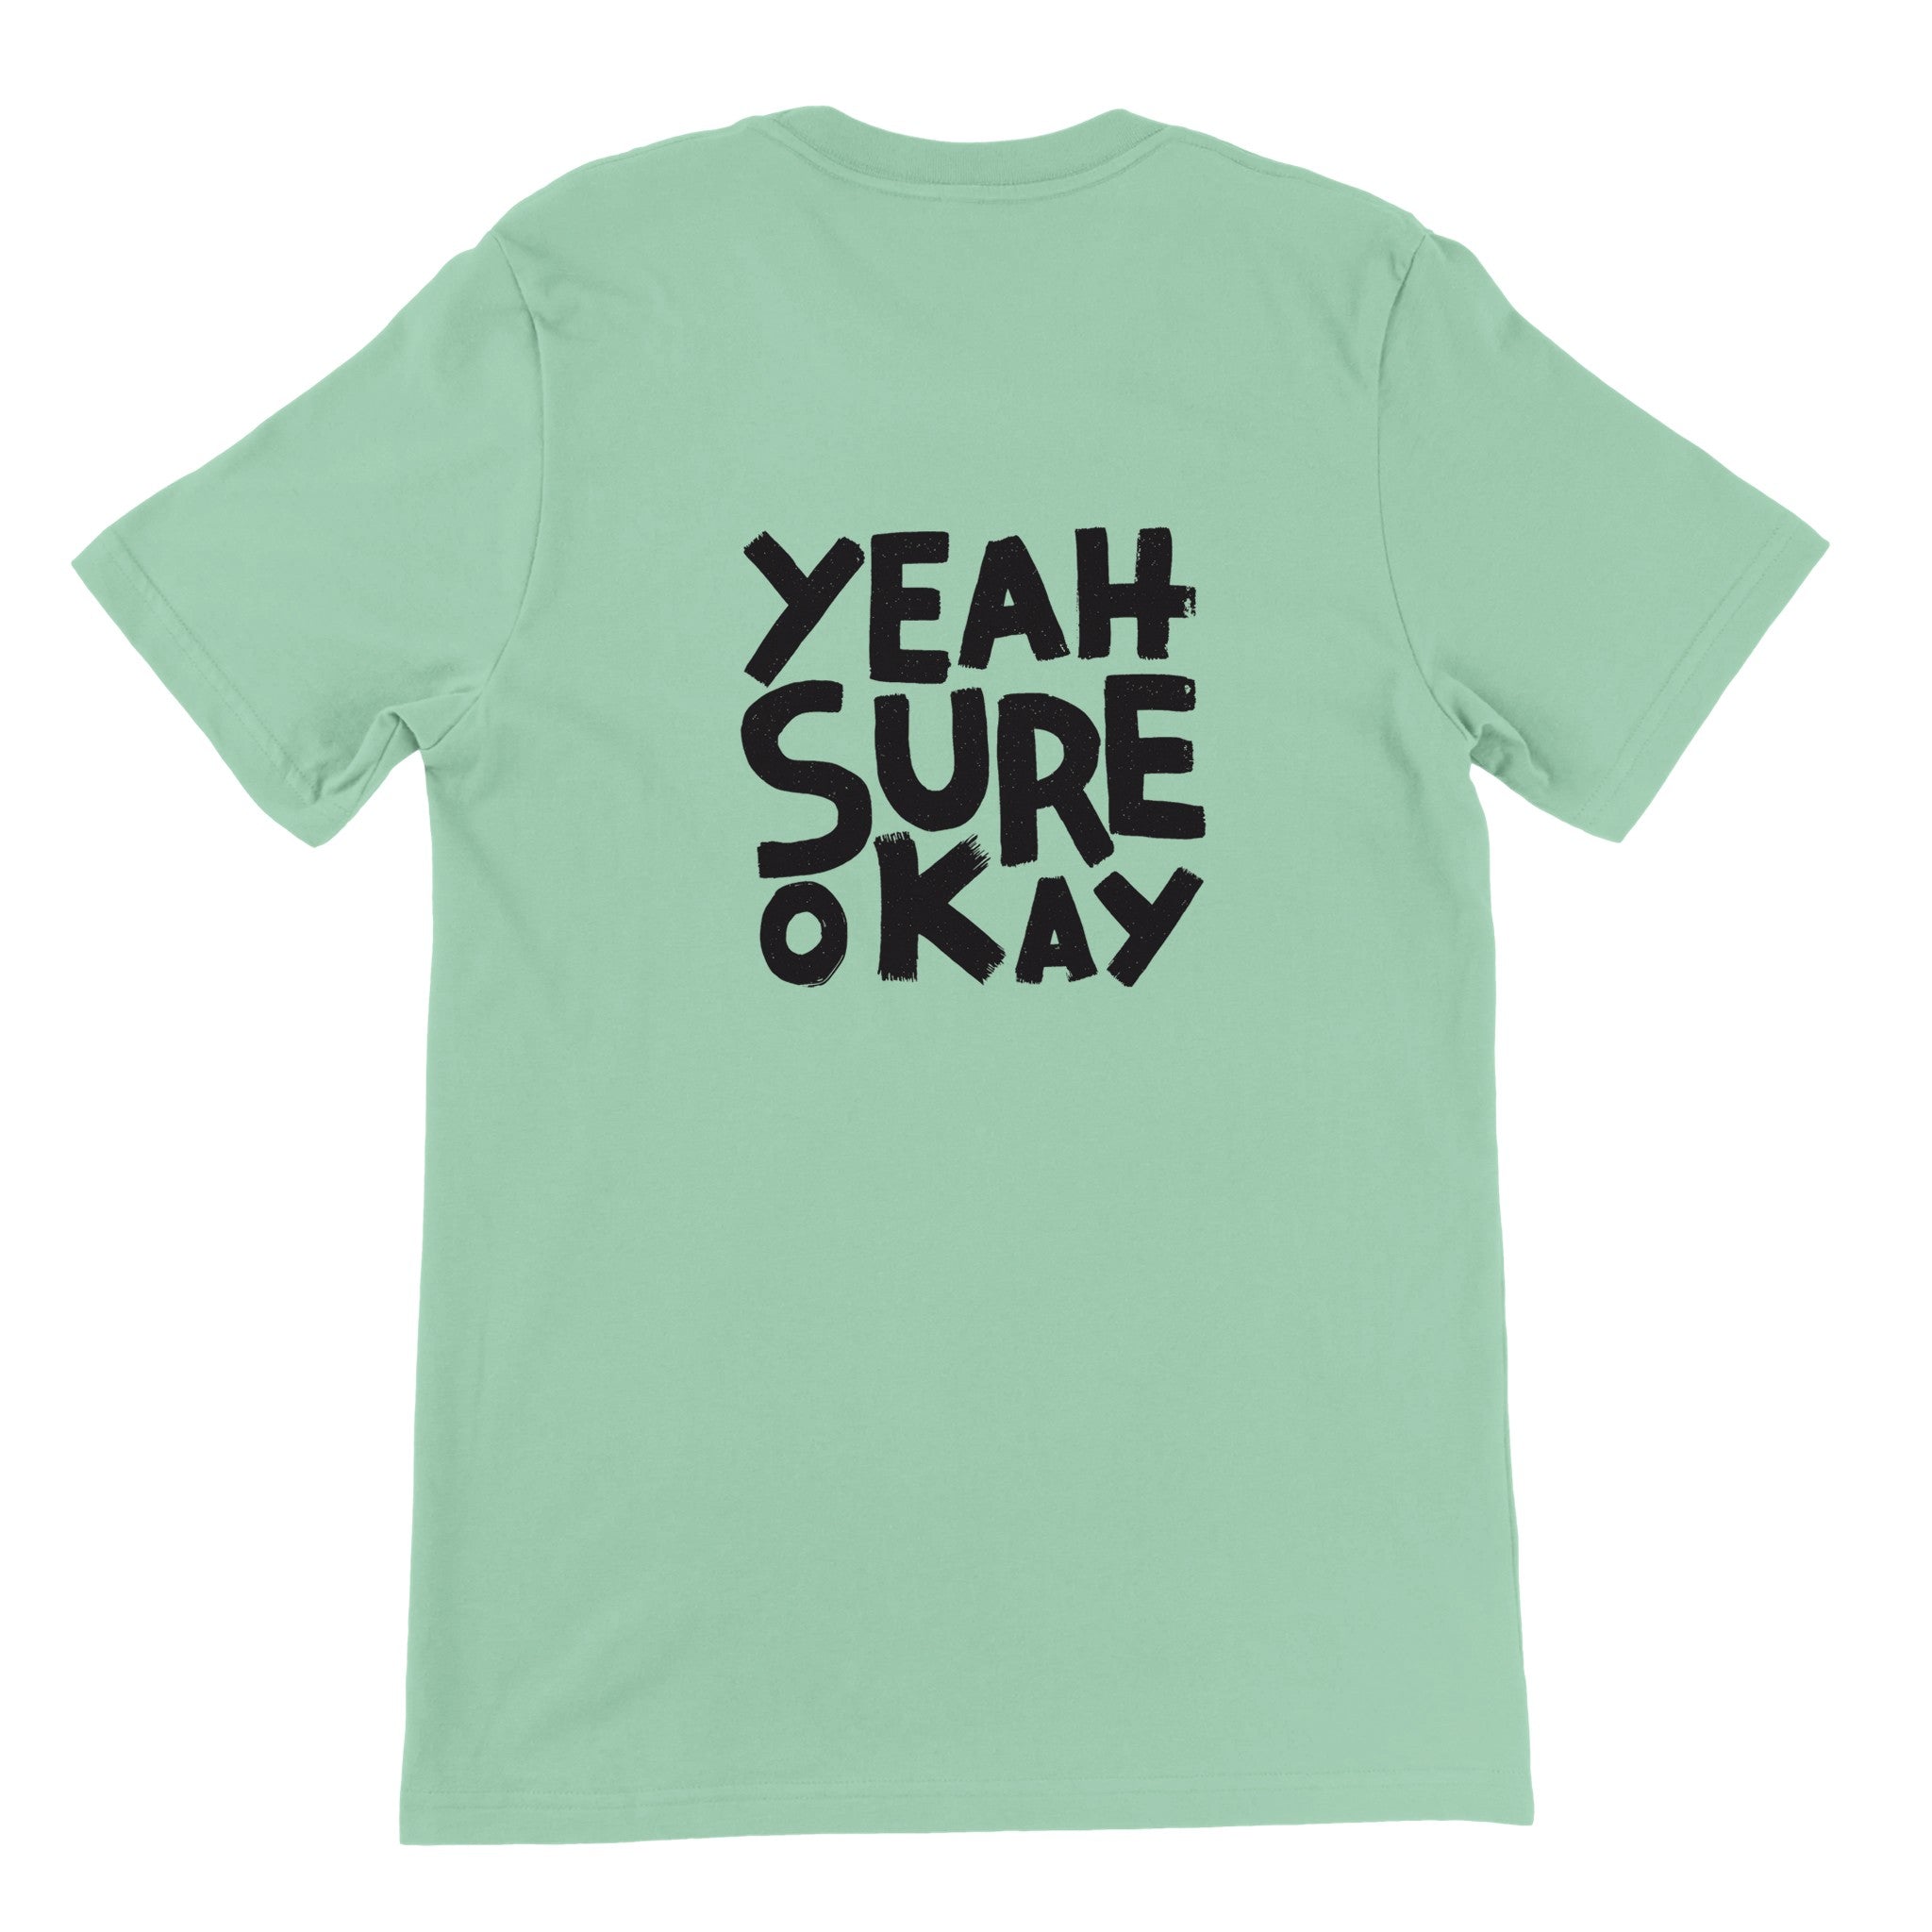 YEAH SURE OKAY Crewneck T-shirt - Optimalprint